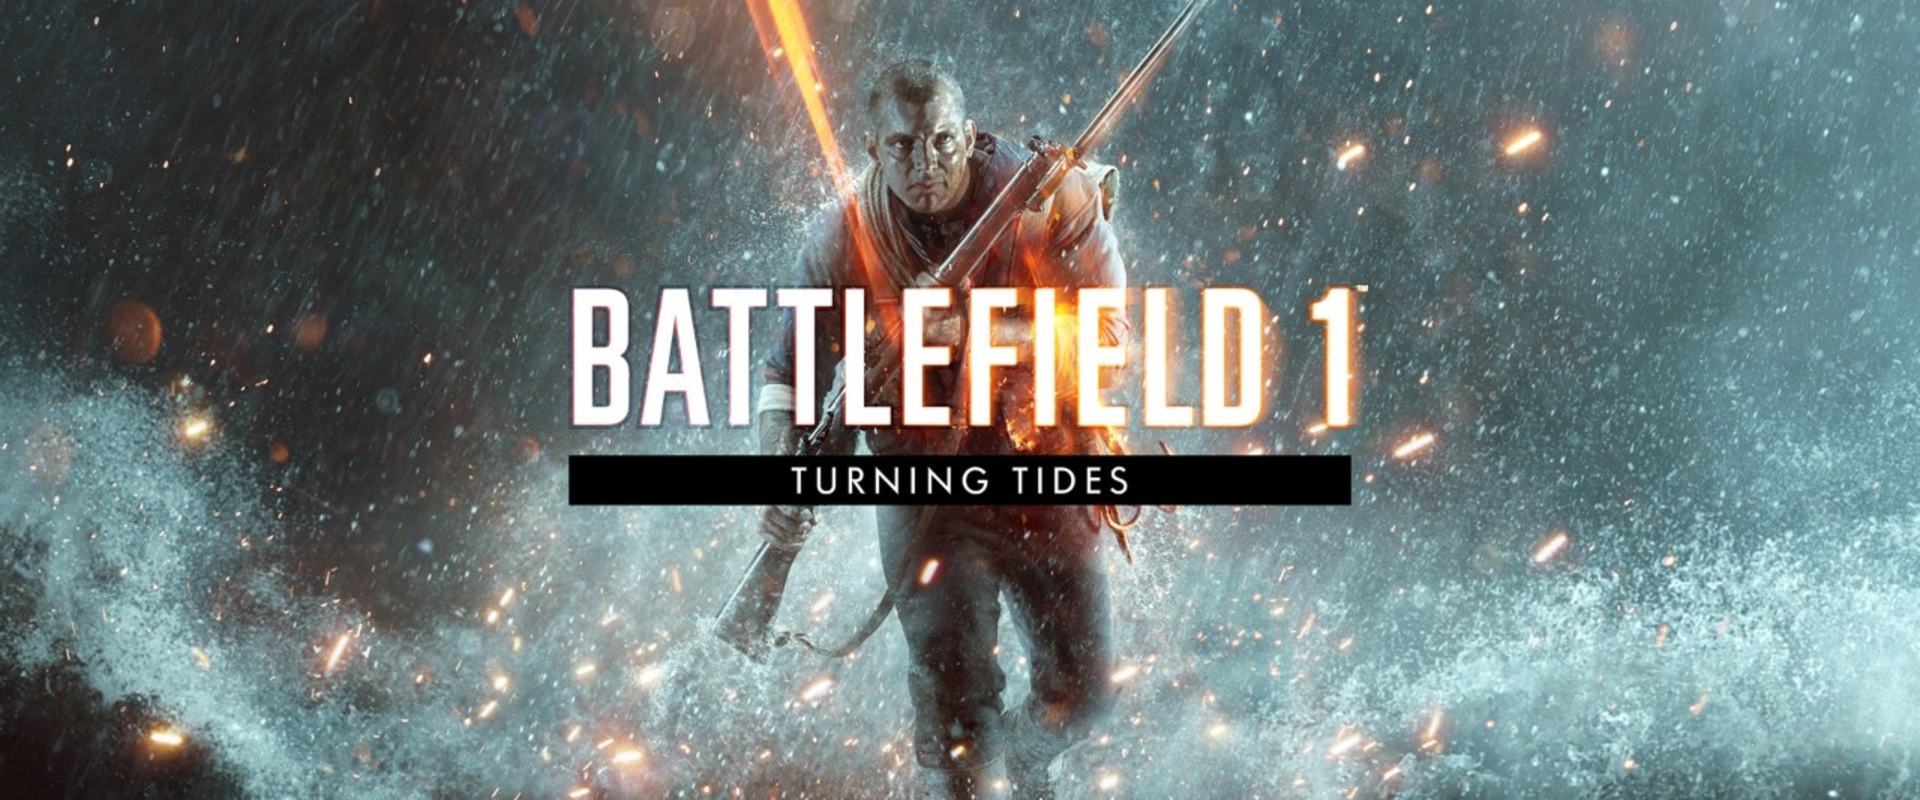 Nézd meg velünk a Battlefield új kiegészítőjét!